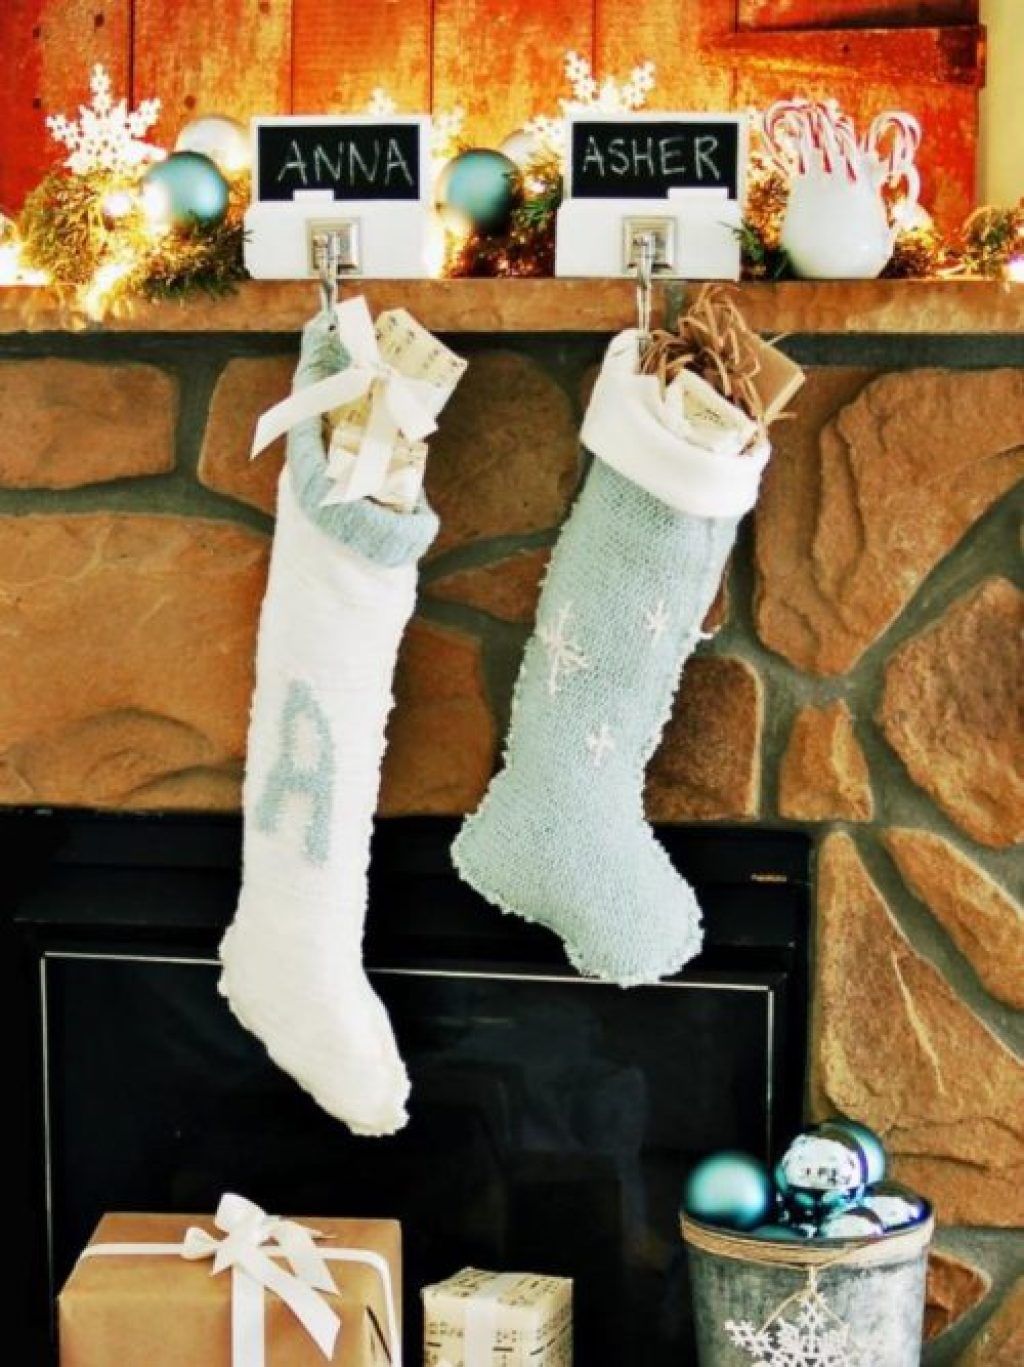 Čarape džempera rade božićne ukrase